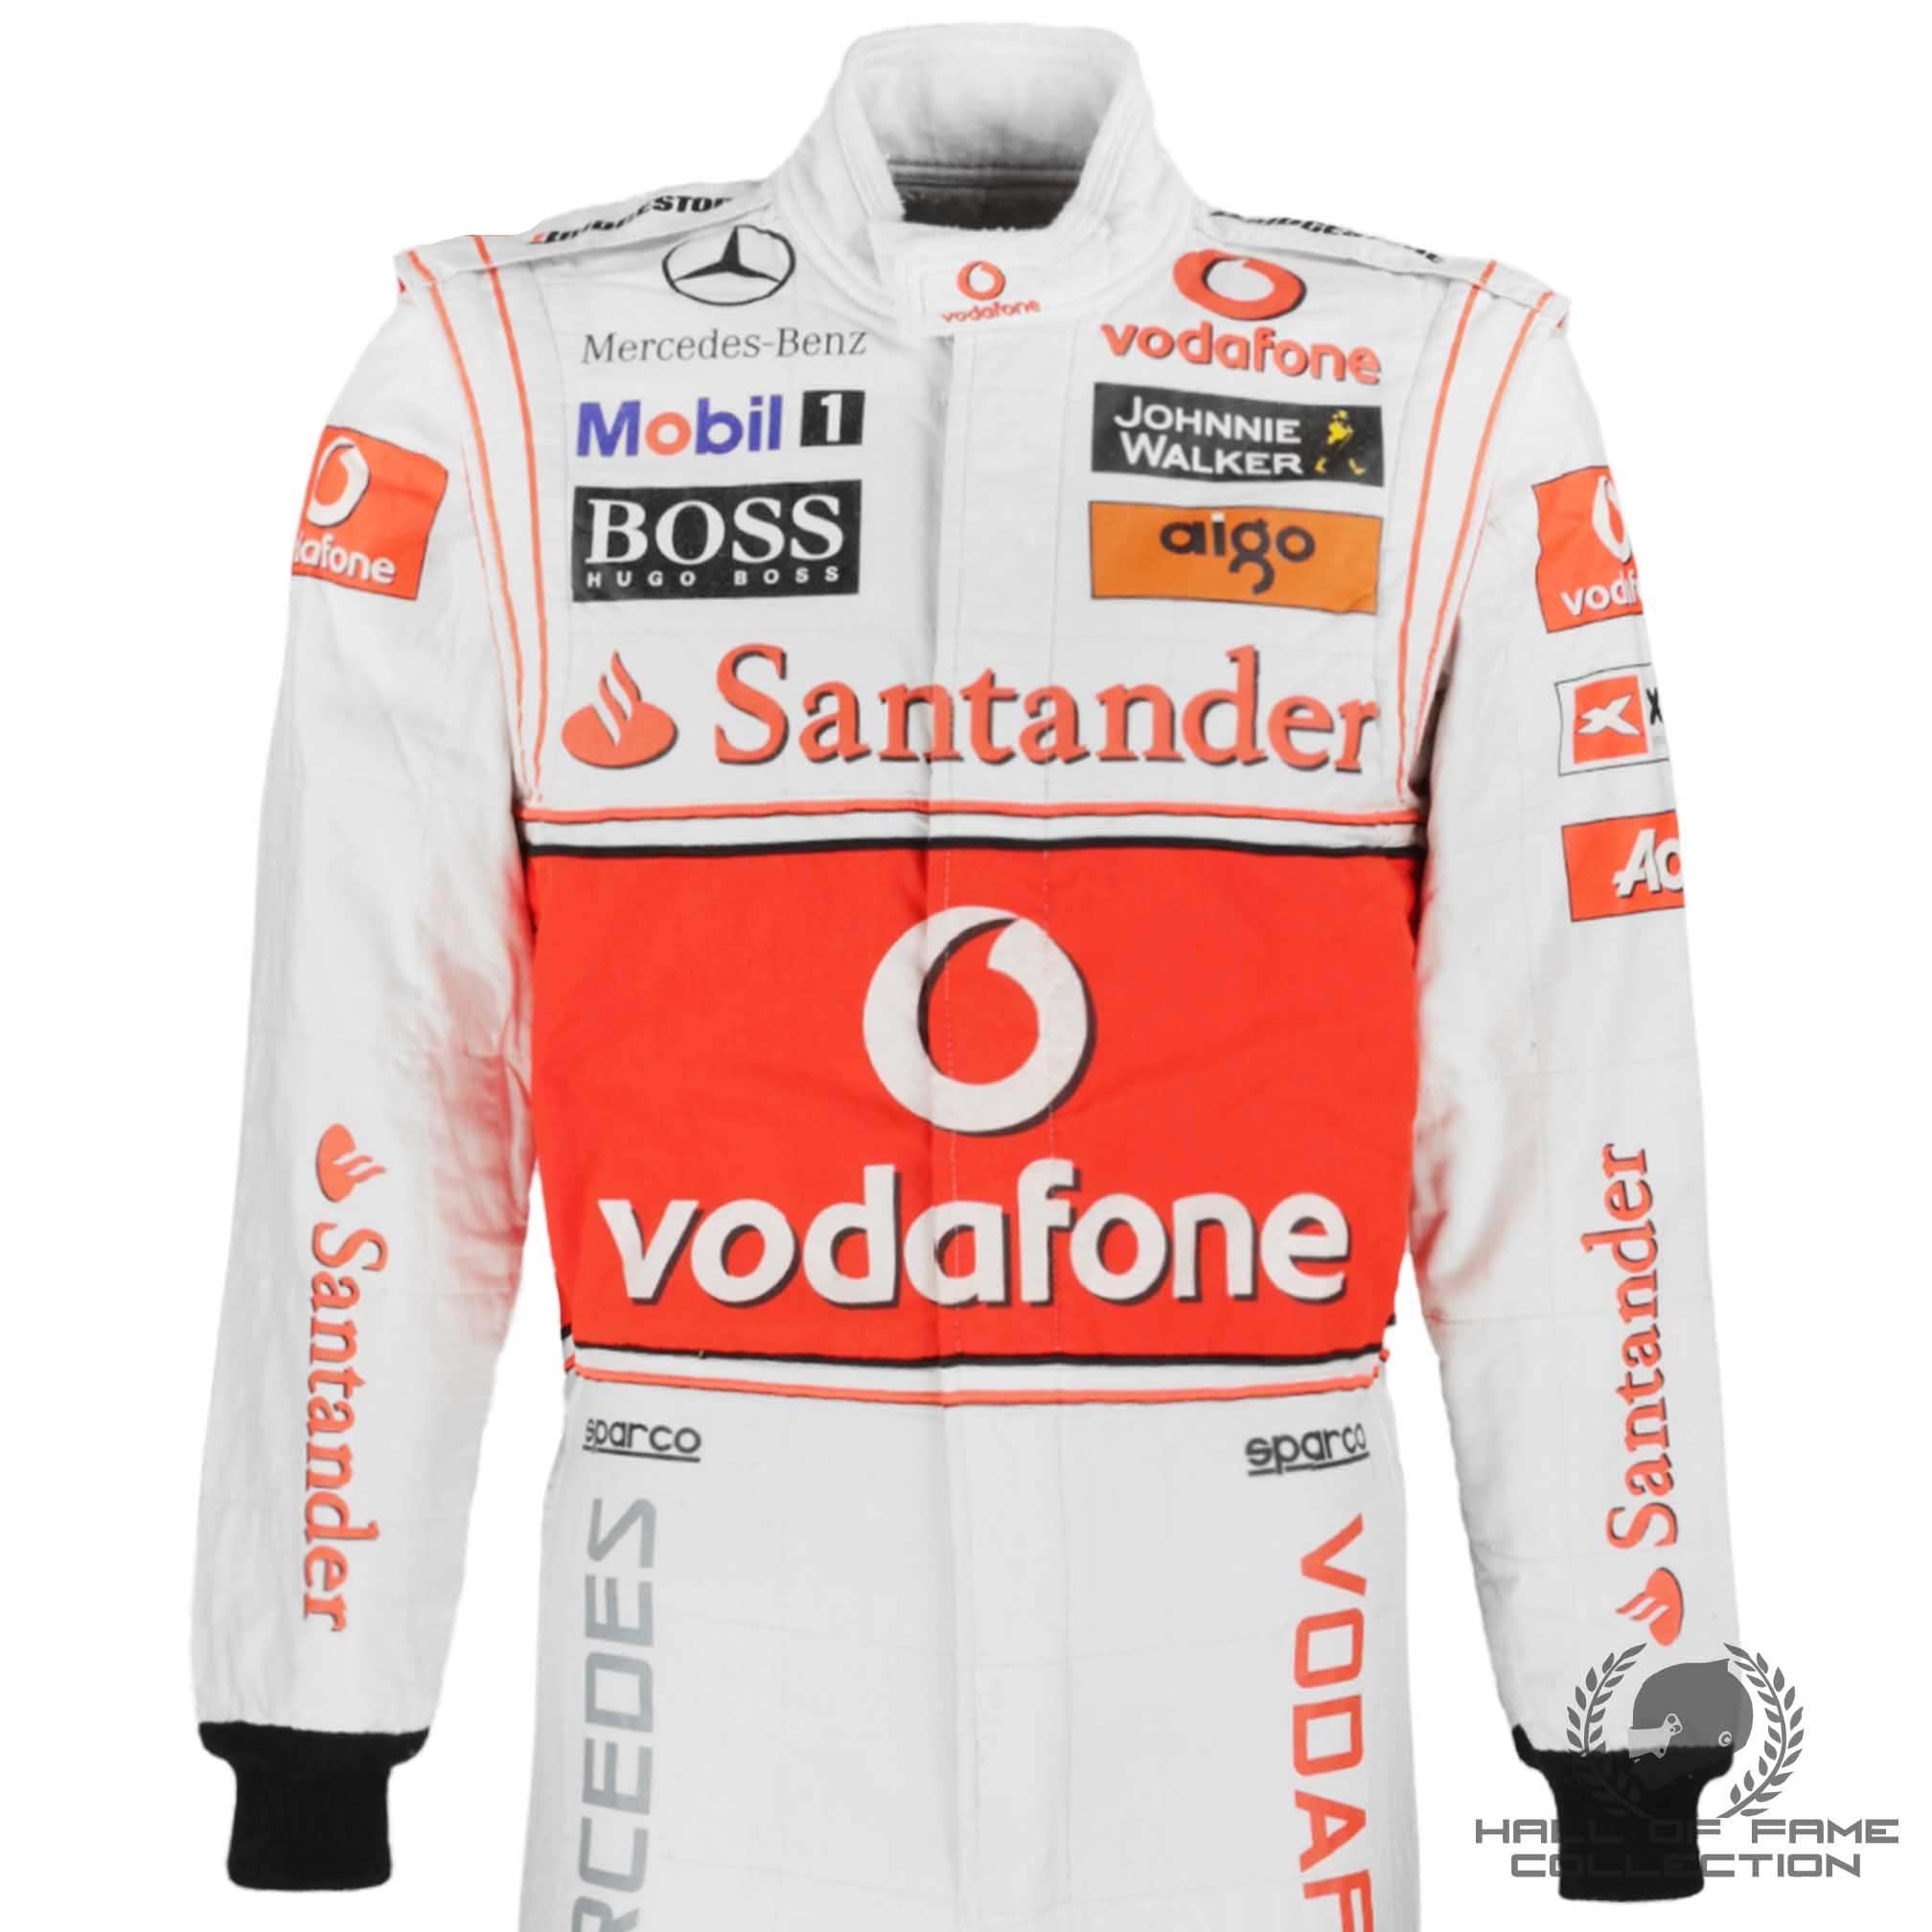 2010 Lewis Hamilton Italian GP Used McLaren F1 Suit